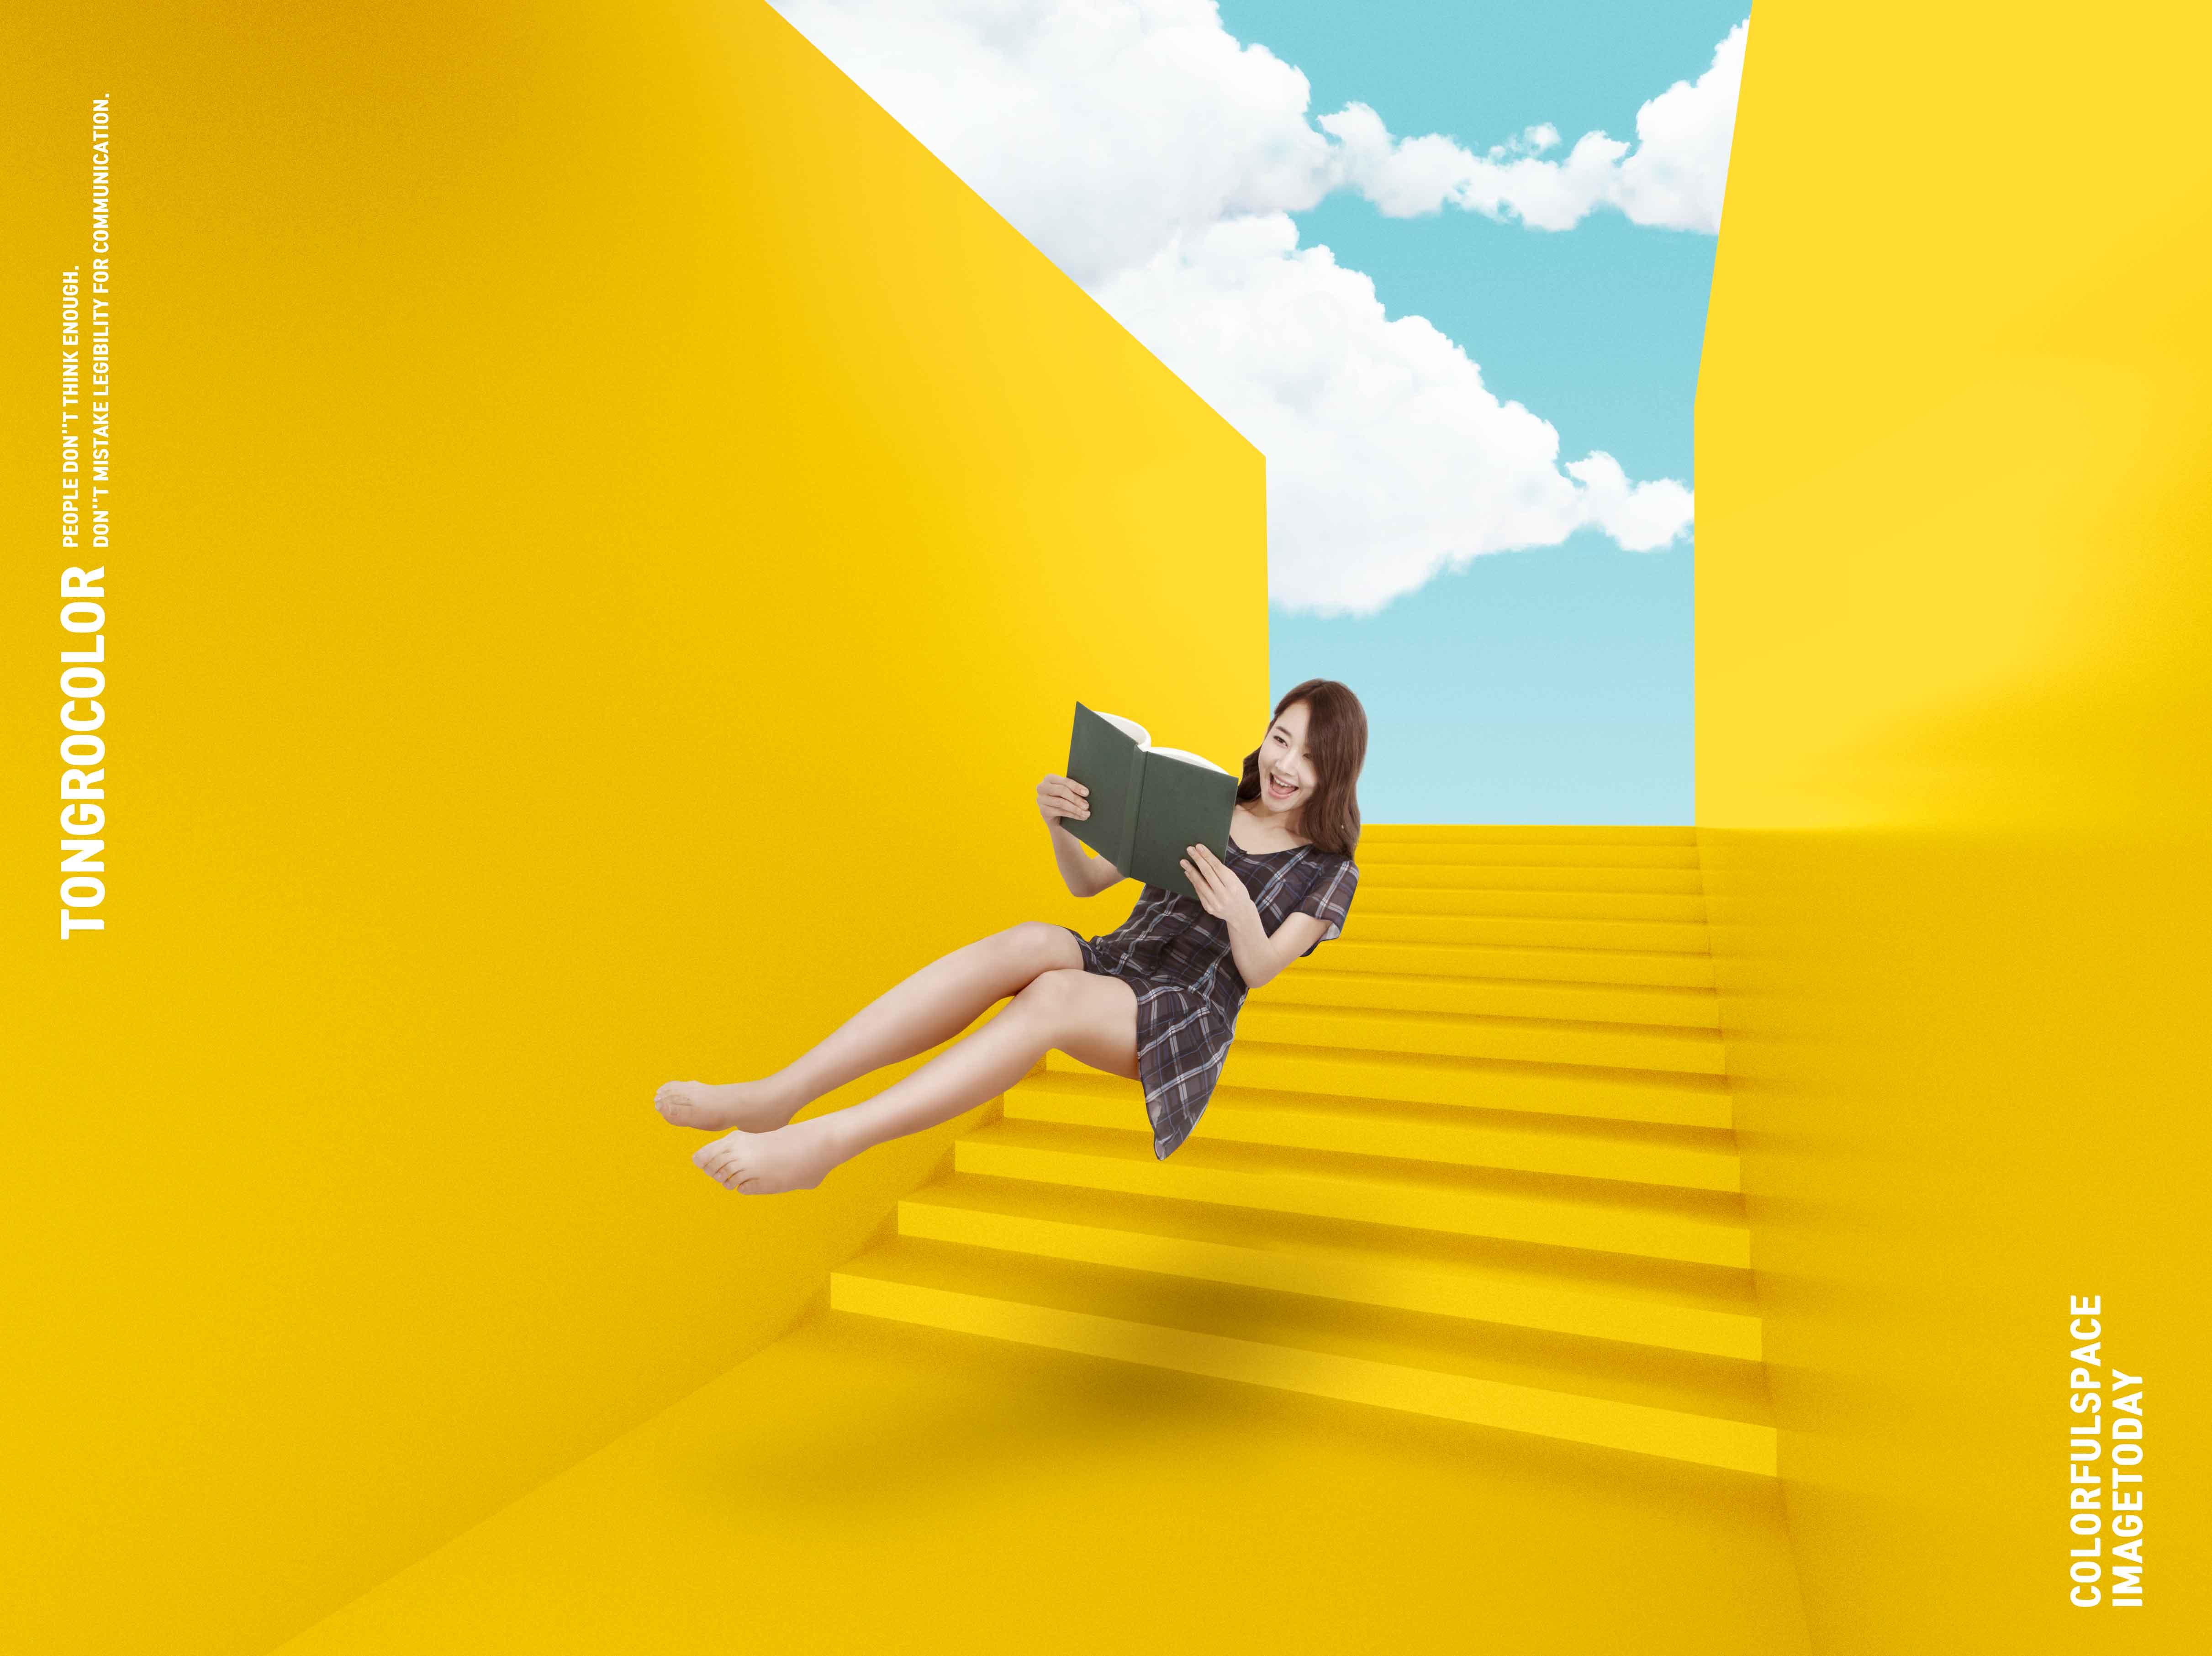 黄色配色抽象楼梯空间海报PSD素材第一素材精选psd素材插图